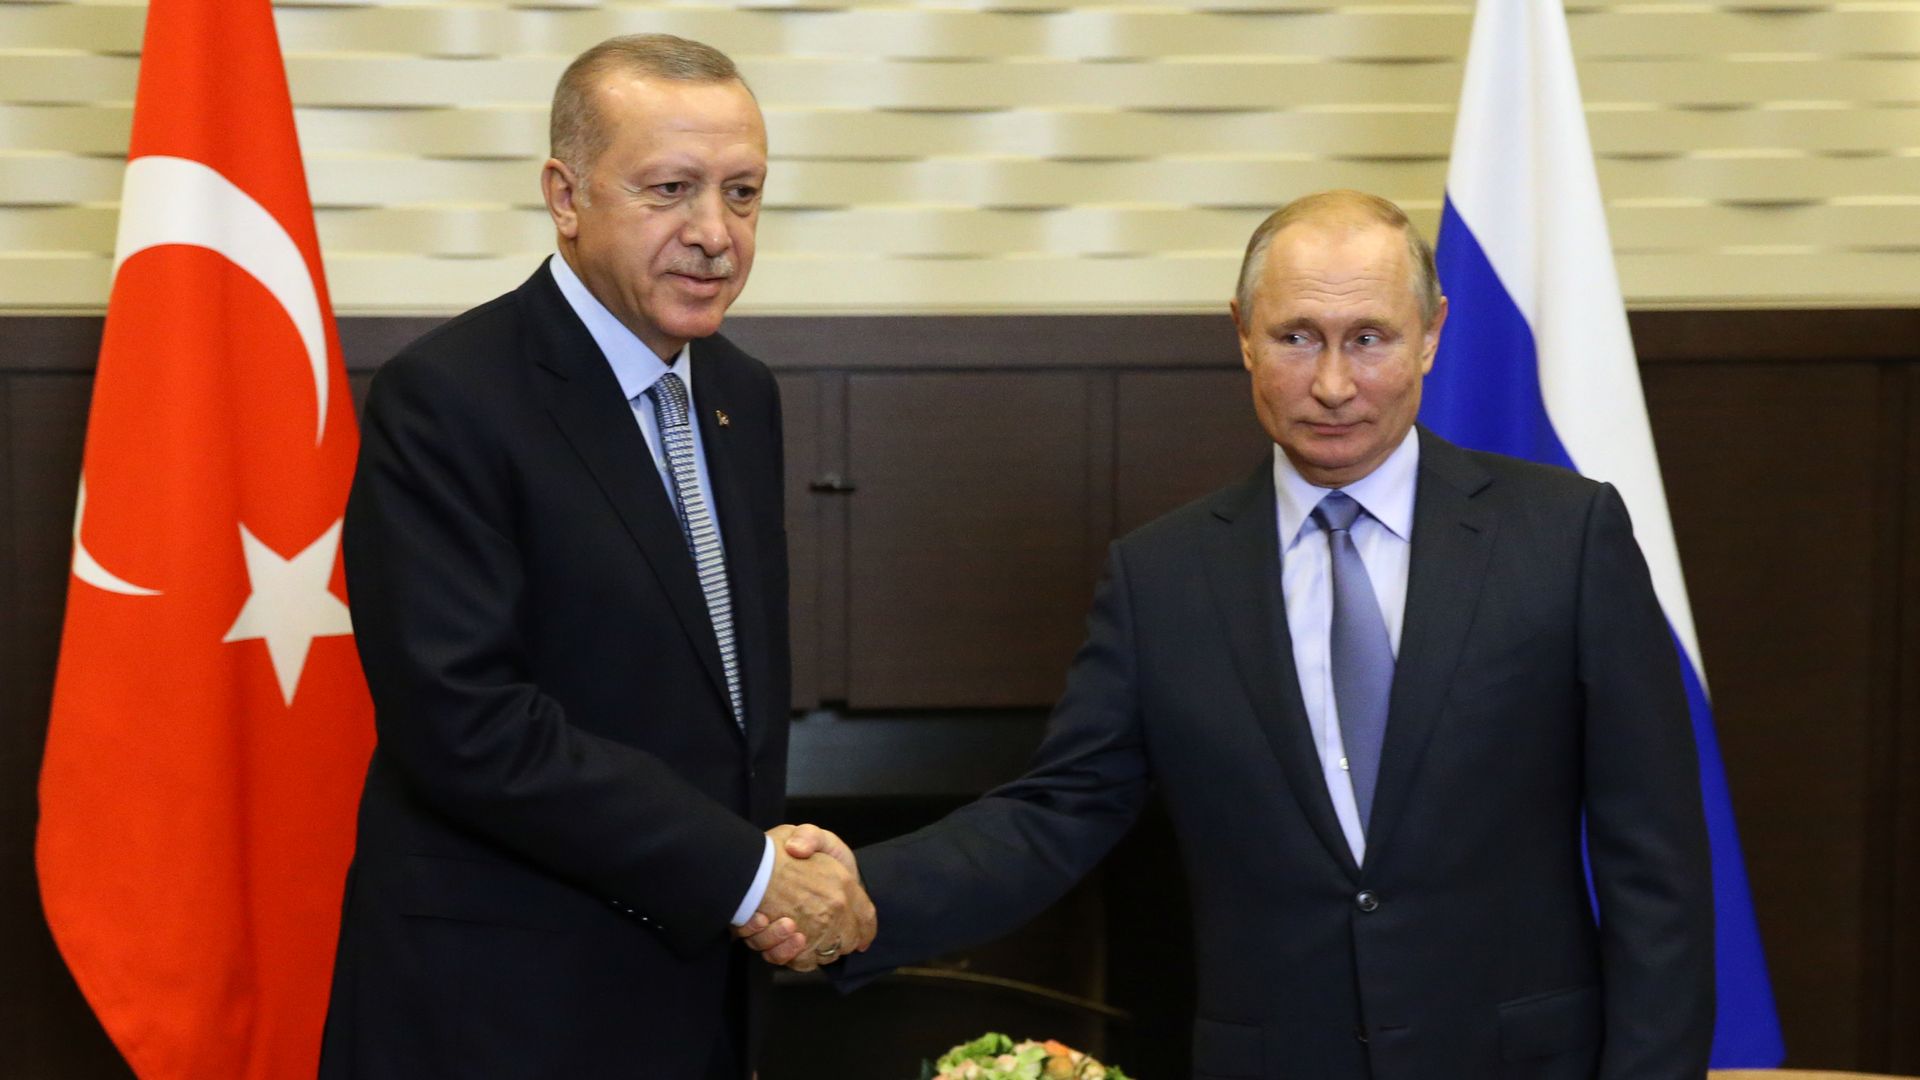 Erdogan and Putin